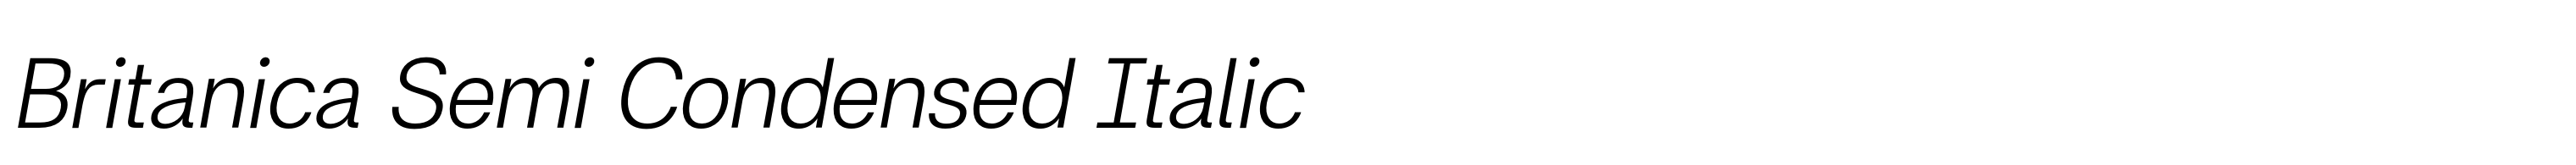 Britanica Semi Condensed Italic